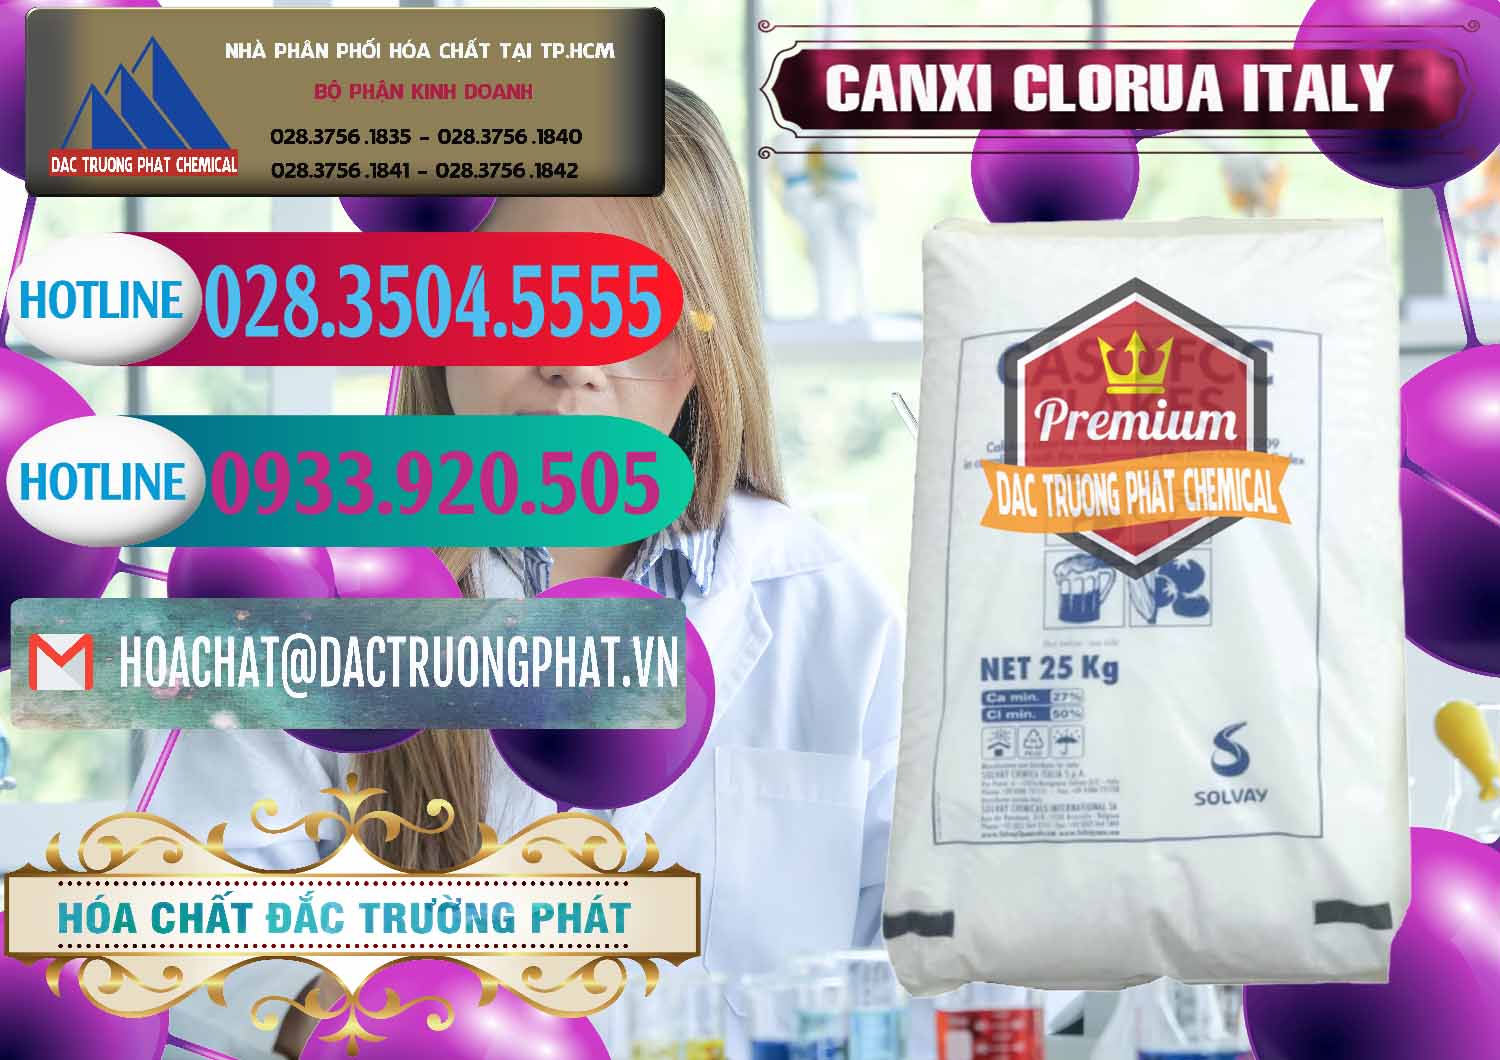 Cty bán & cung ứng CaCl2 – Canxi Clorua Food Grade Ý Italy - 0435 - Nơi chuyên kinh doanh & phân phối hóa chất tại TP.HCM - truongphat.vn